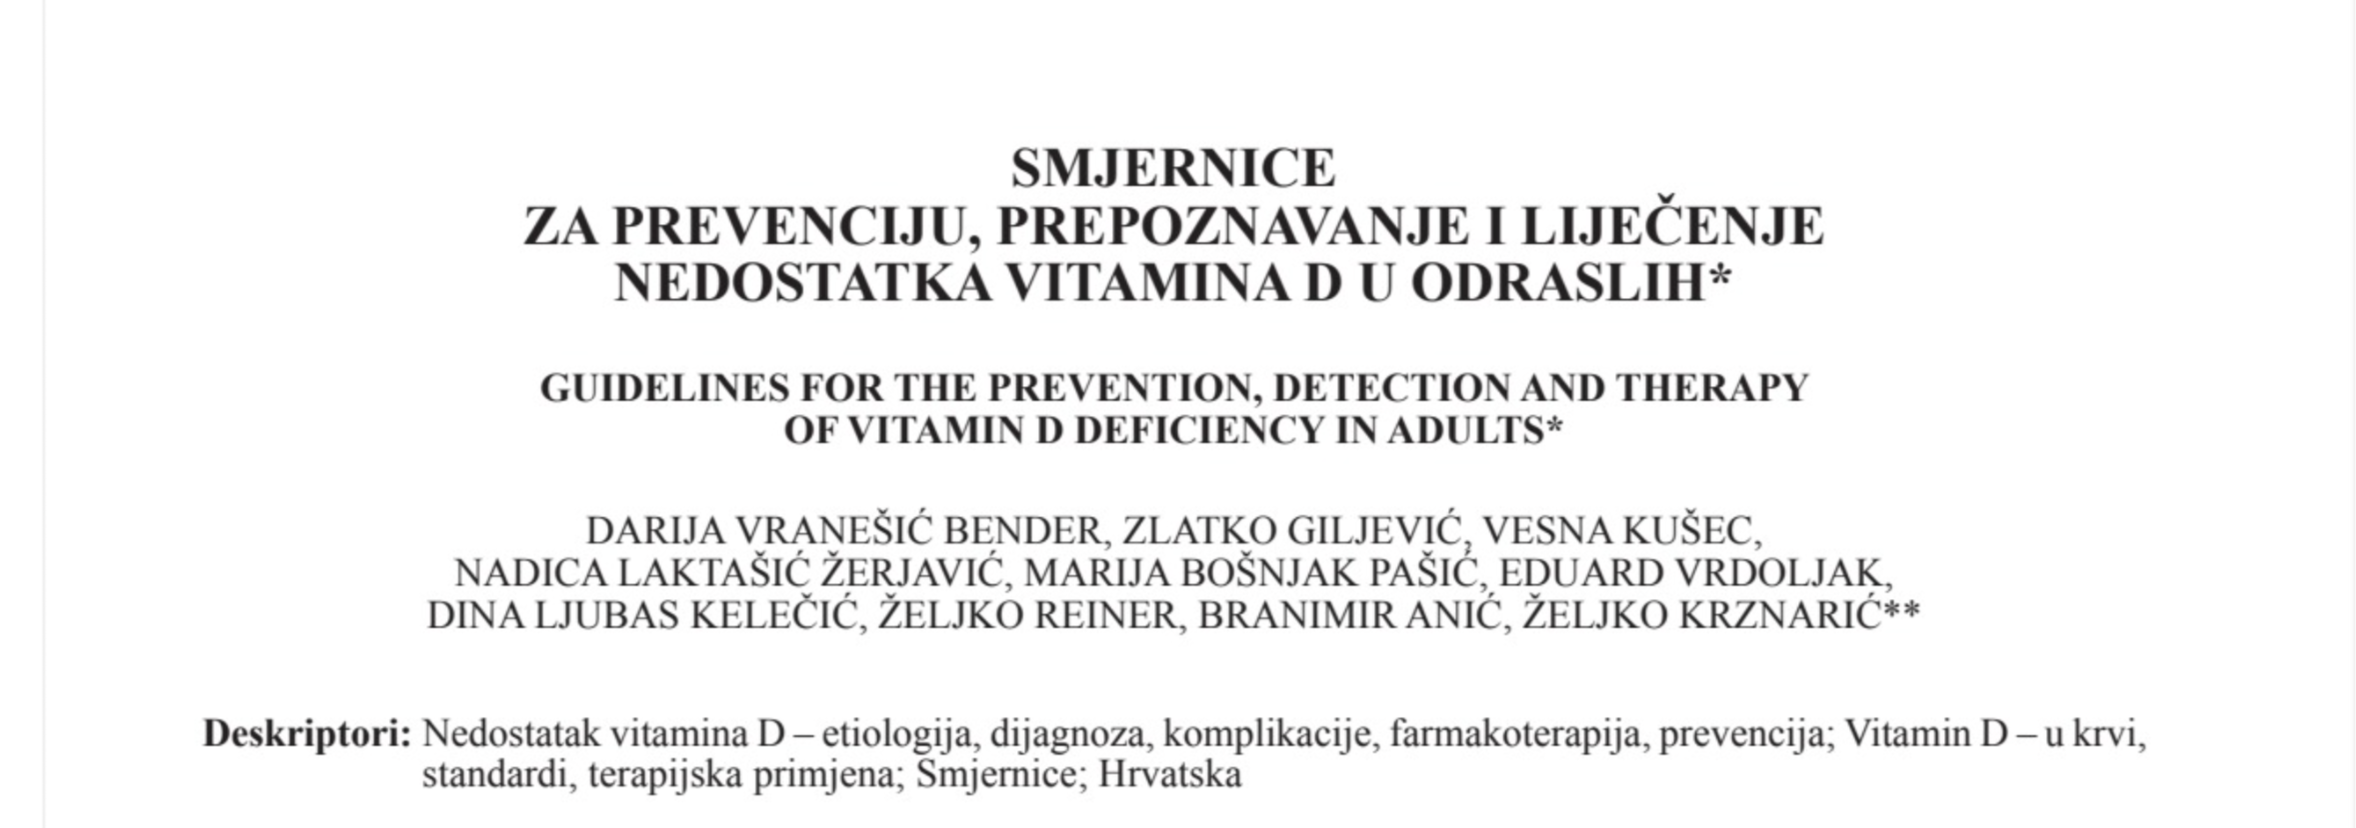 Smjernice za prevenciju, prepoznavanje i liječenje nedostatka vitamina D u odraslih